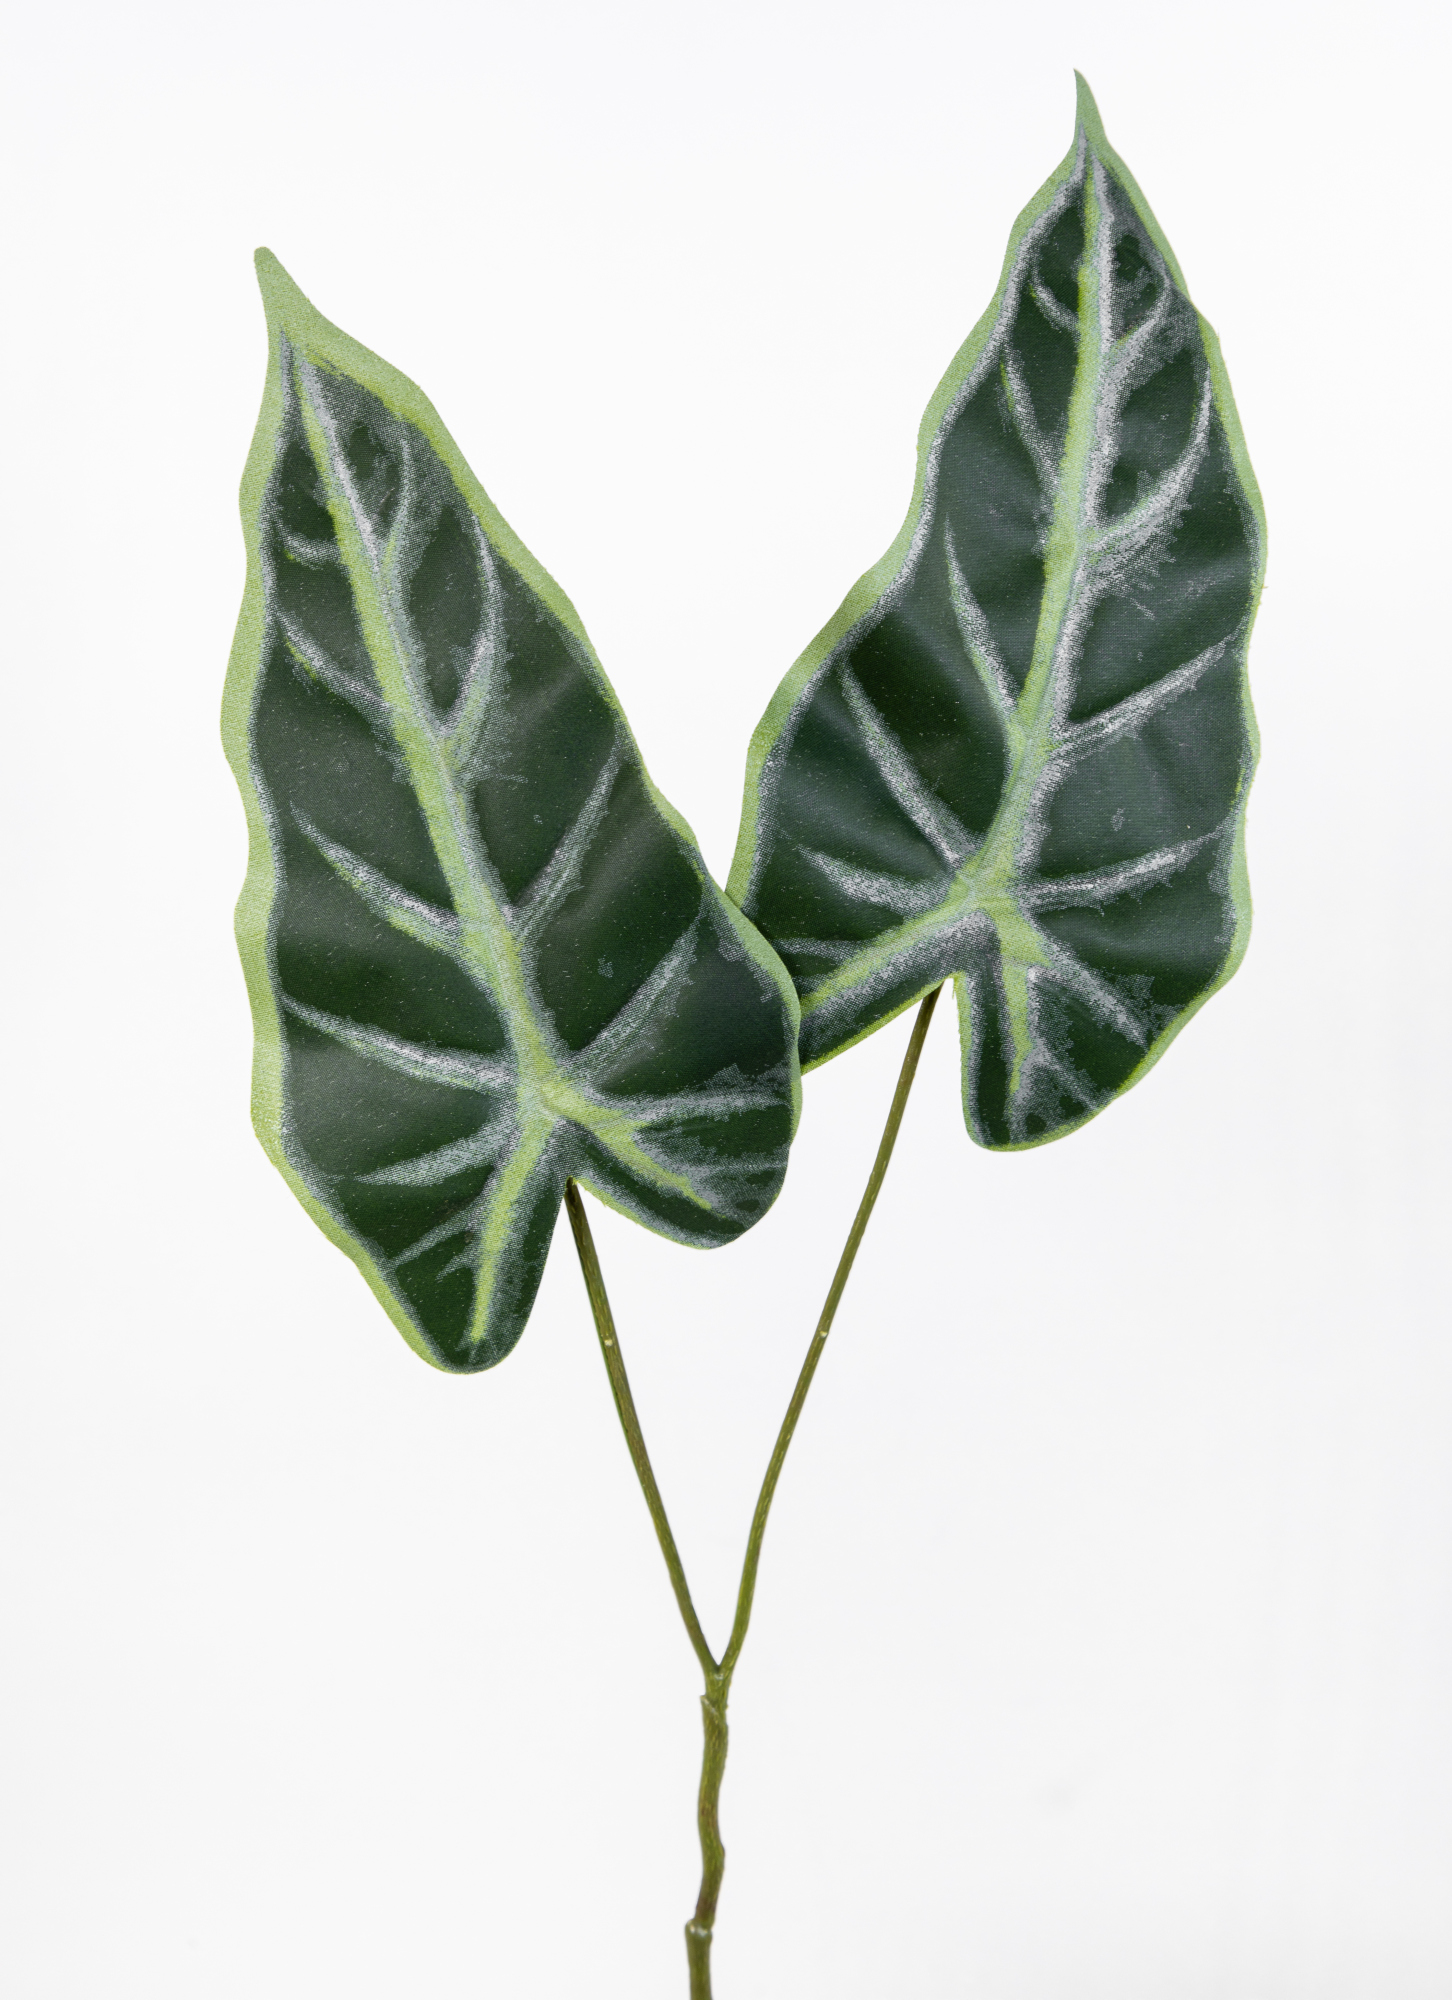 12 Stück Blattzweig Alocasia mit 2 Blättern 56cm OG künstlicher Zweig Ast Blatt Kunstpflanzen